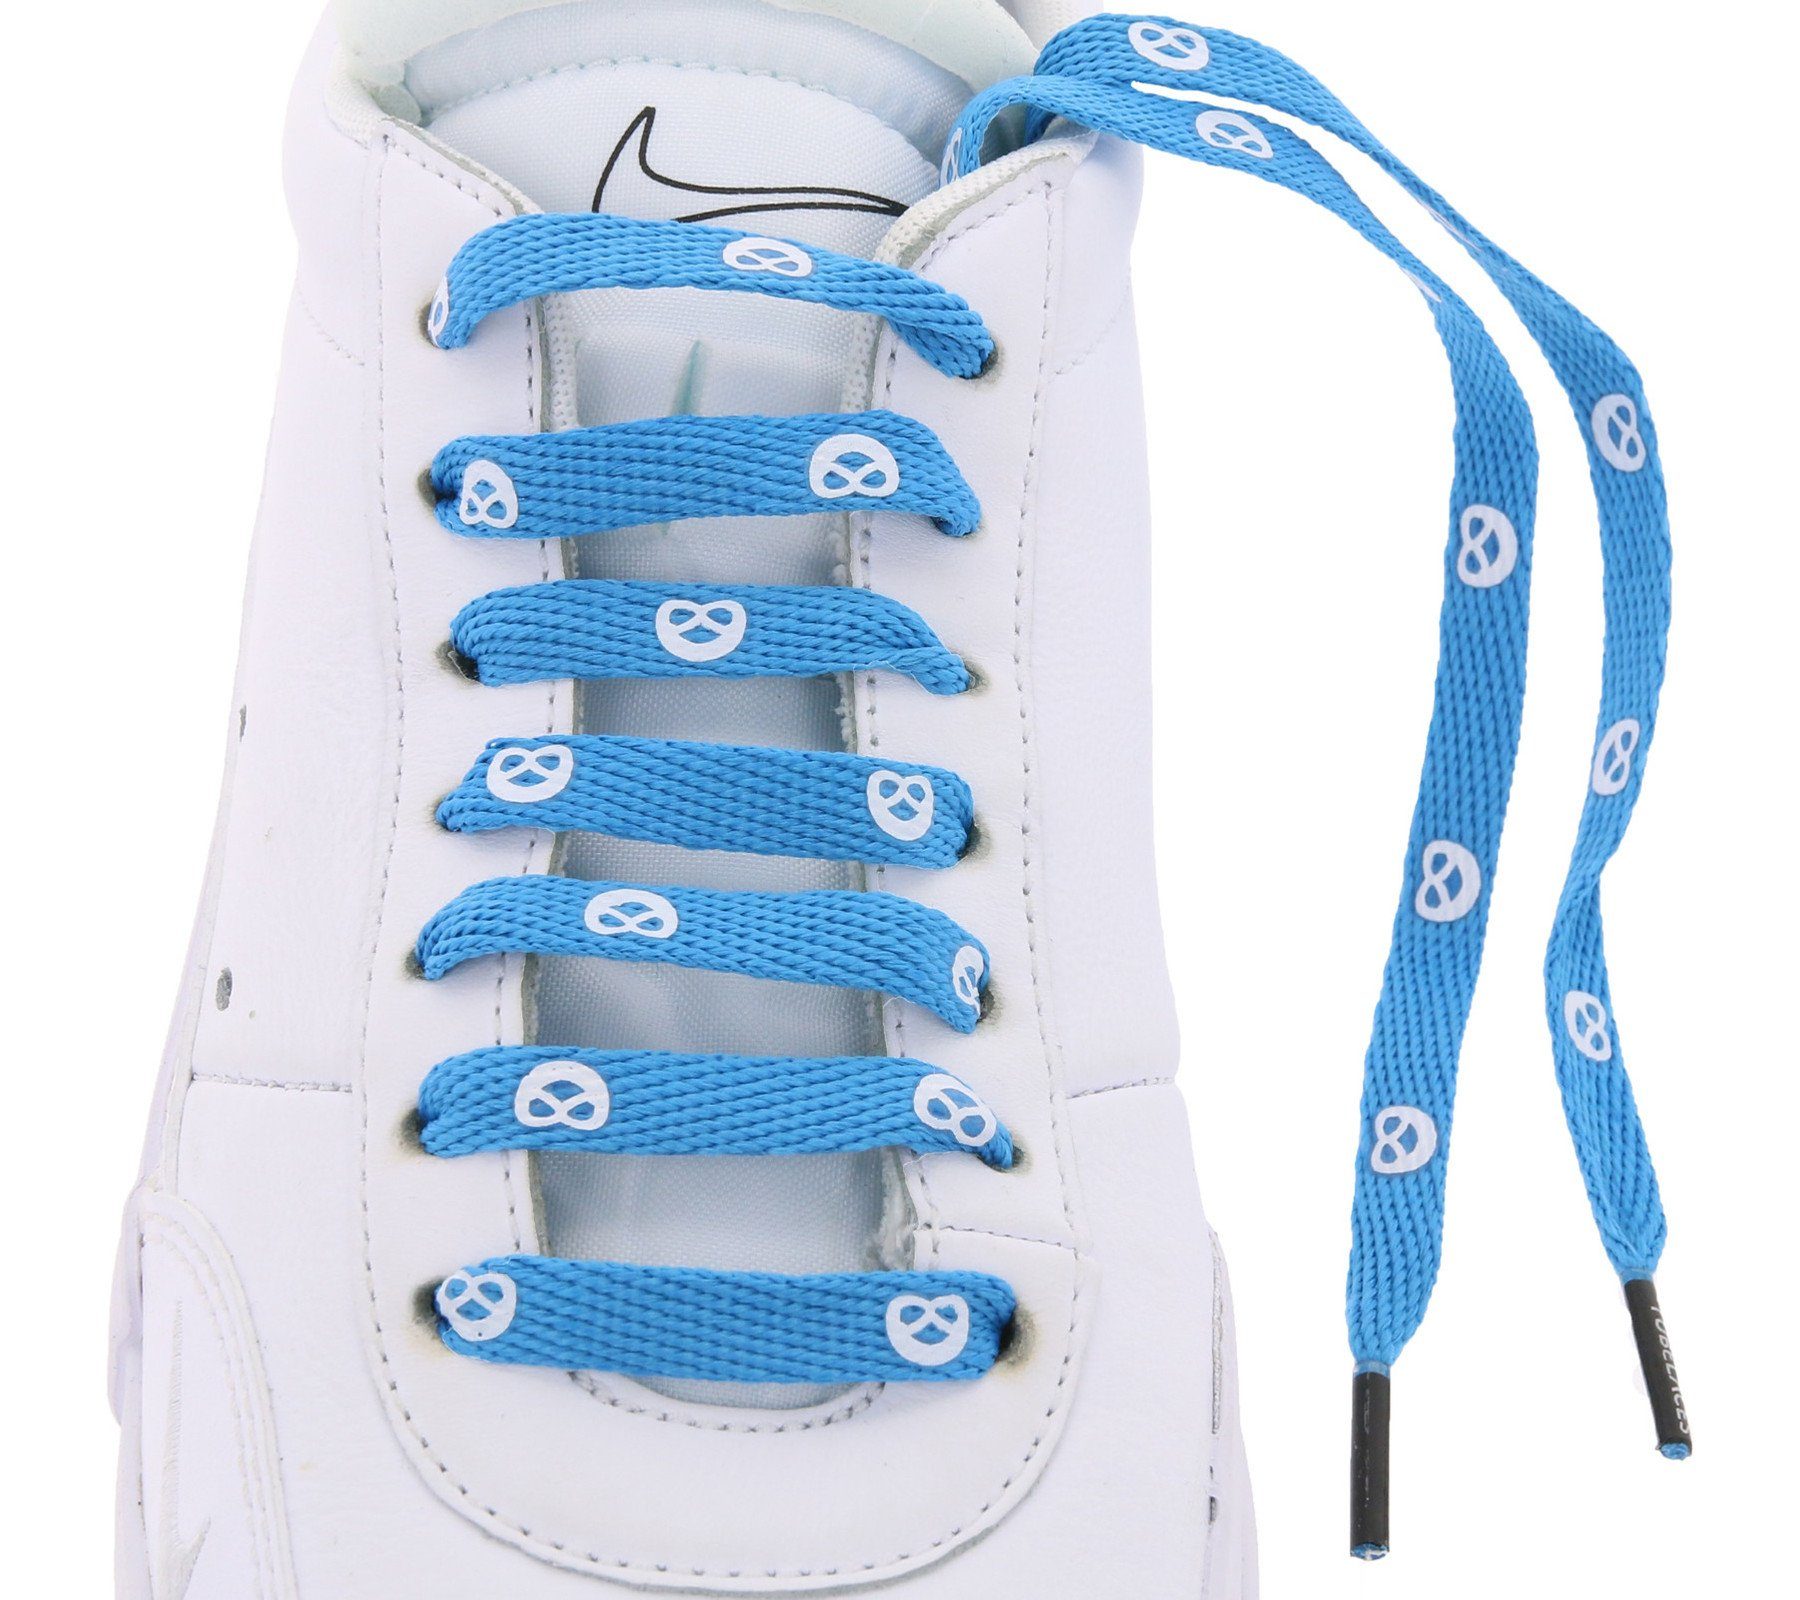 Schuhe Tubelaces zweifarbige TubeLaces Brezn Blau/Rot Schnürbänder Schnürsenkel Schnürbänder Schnürsenkel